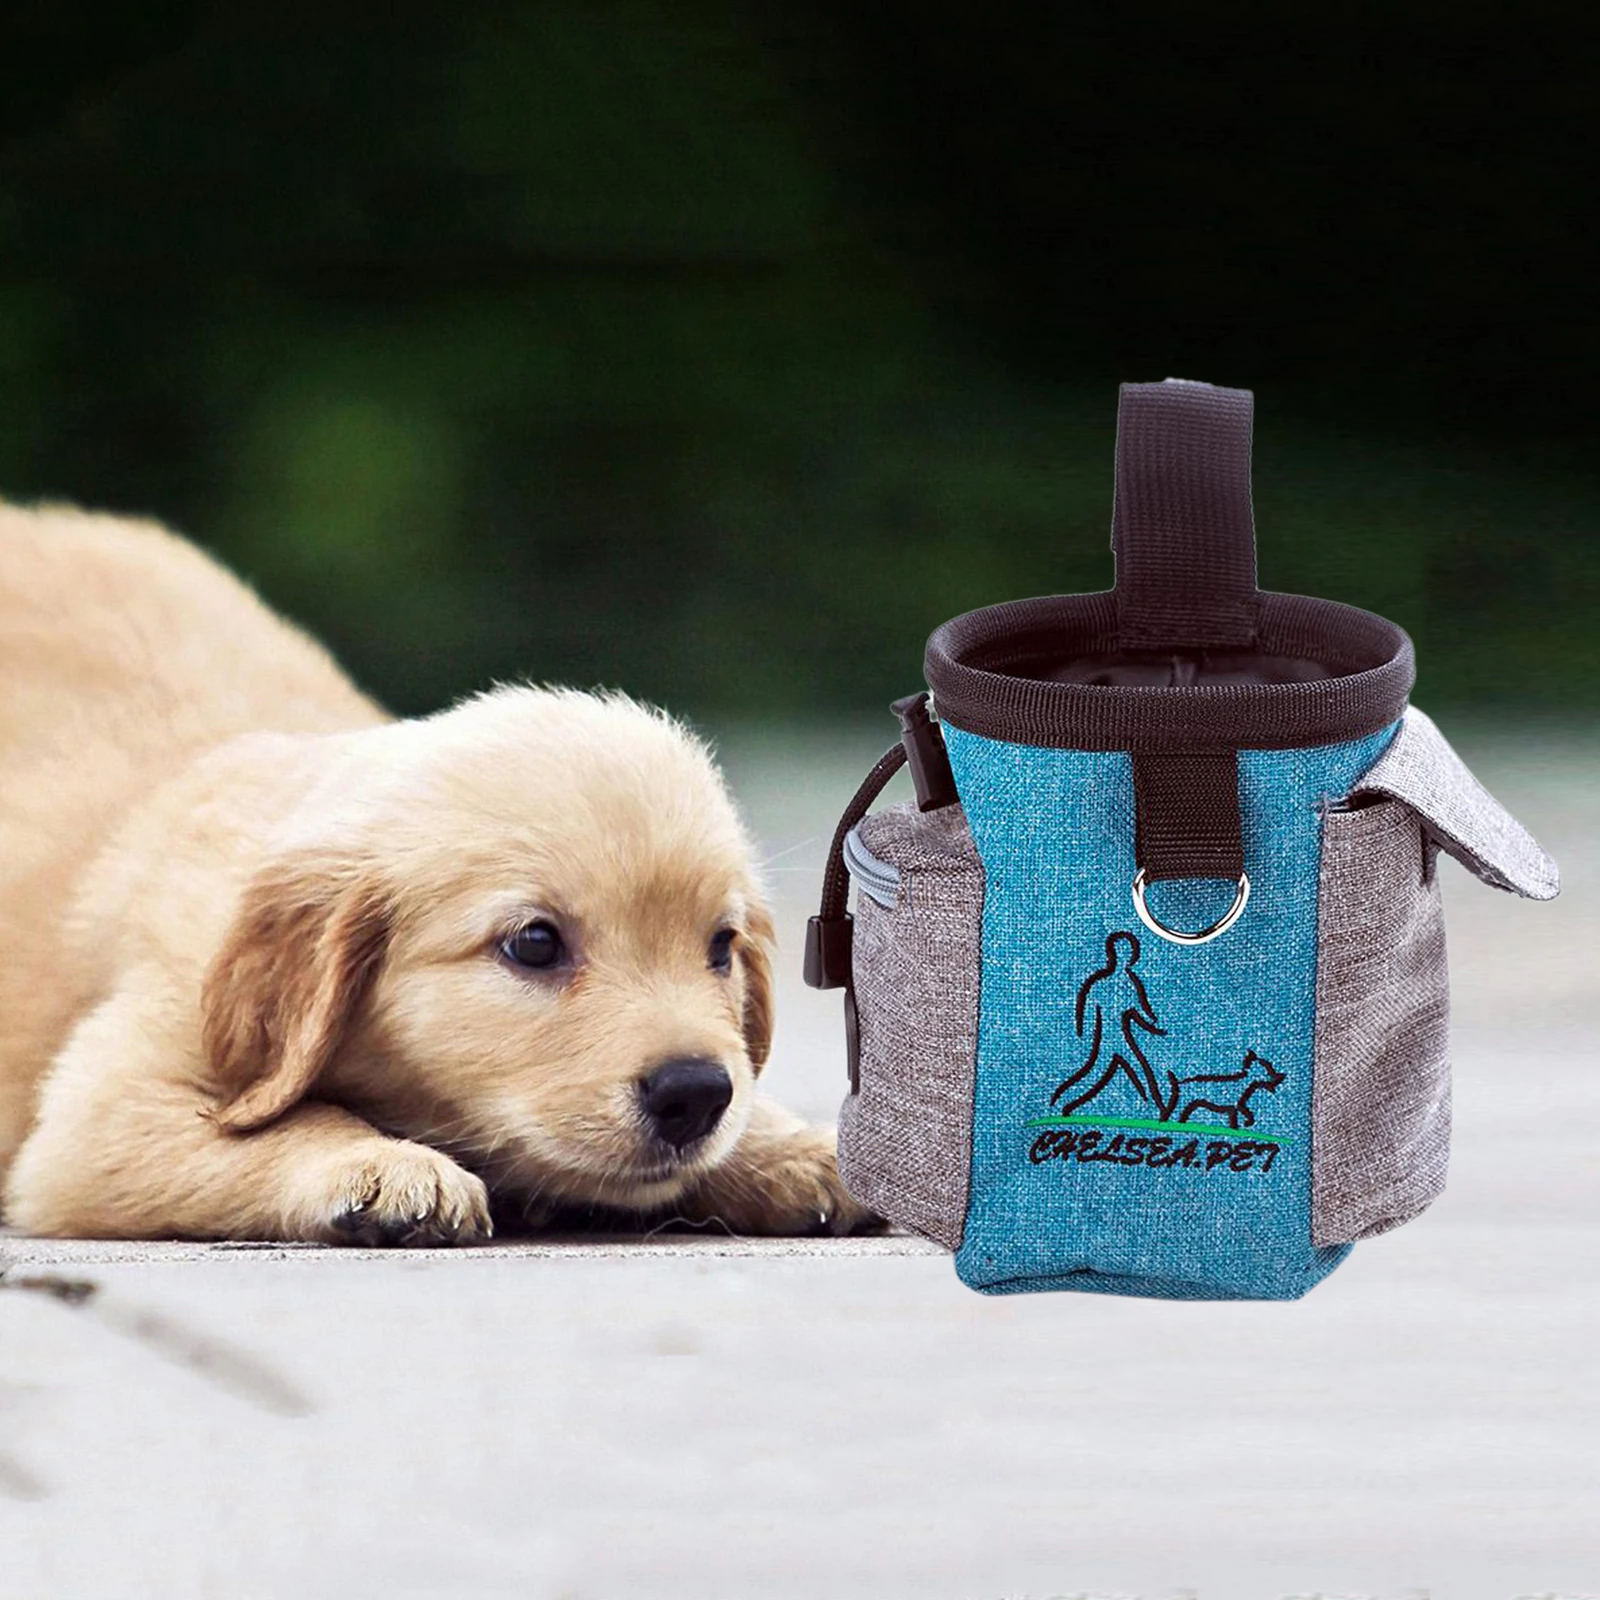 Dog Treat Pouch Training Bag with Belt Clip, Drawstring Dog Bag Dispenser, Food Snack Storage Holder Carrier